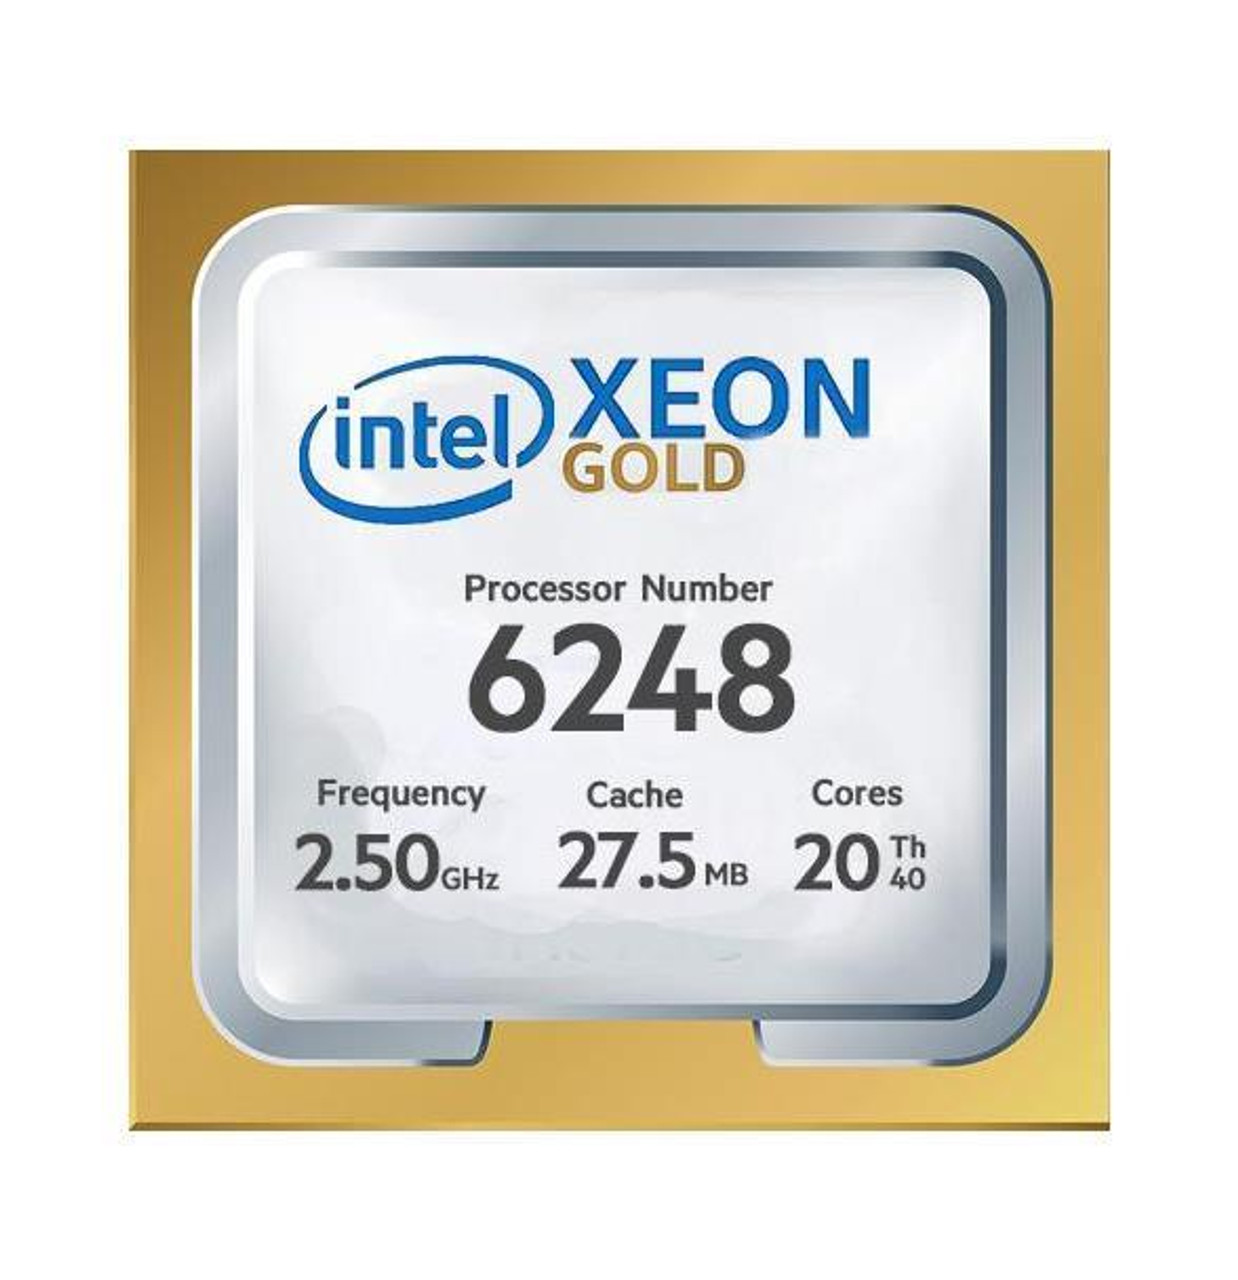 T7920-6248 Dell CPU Kit Intel Xeon Gold 20 Core Processor 6248 2.50GHz